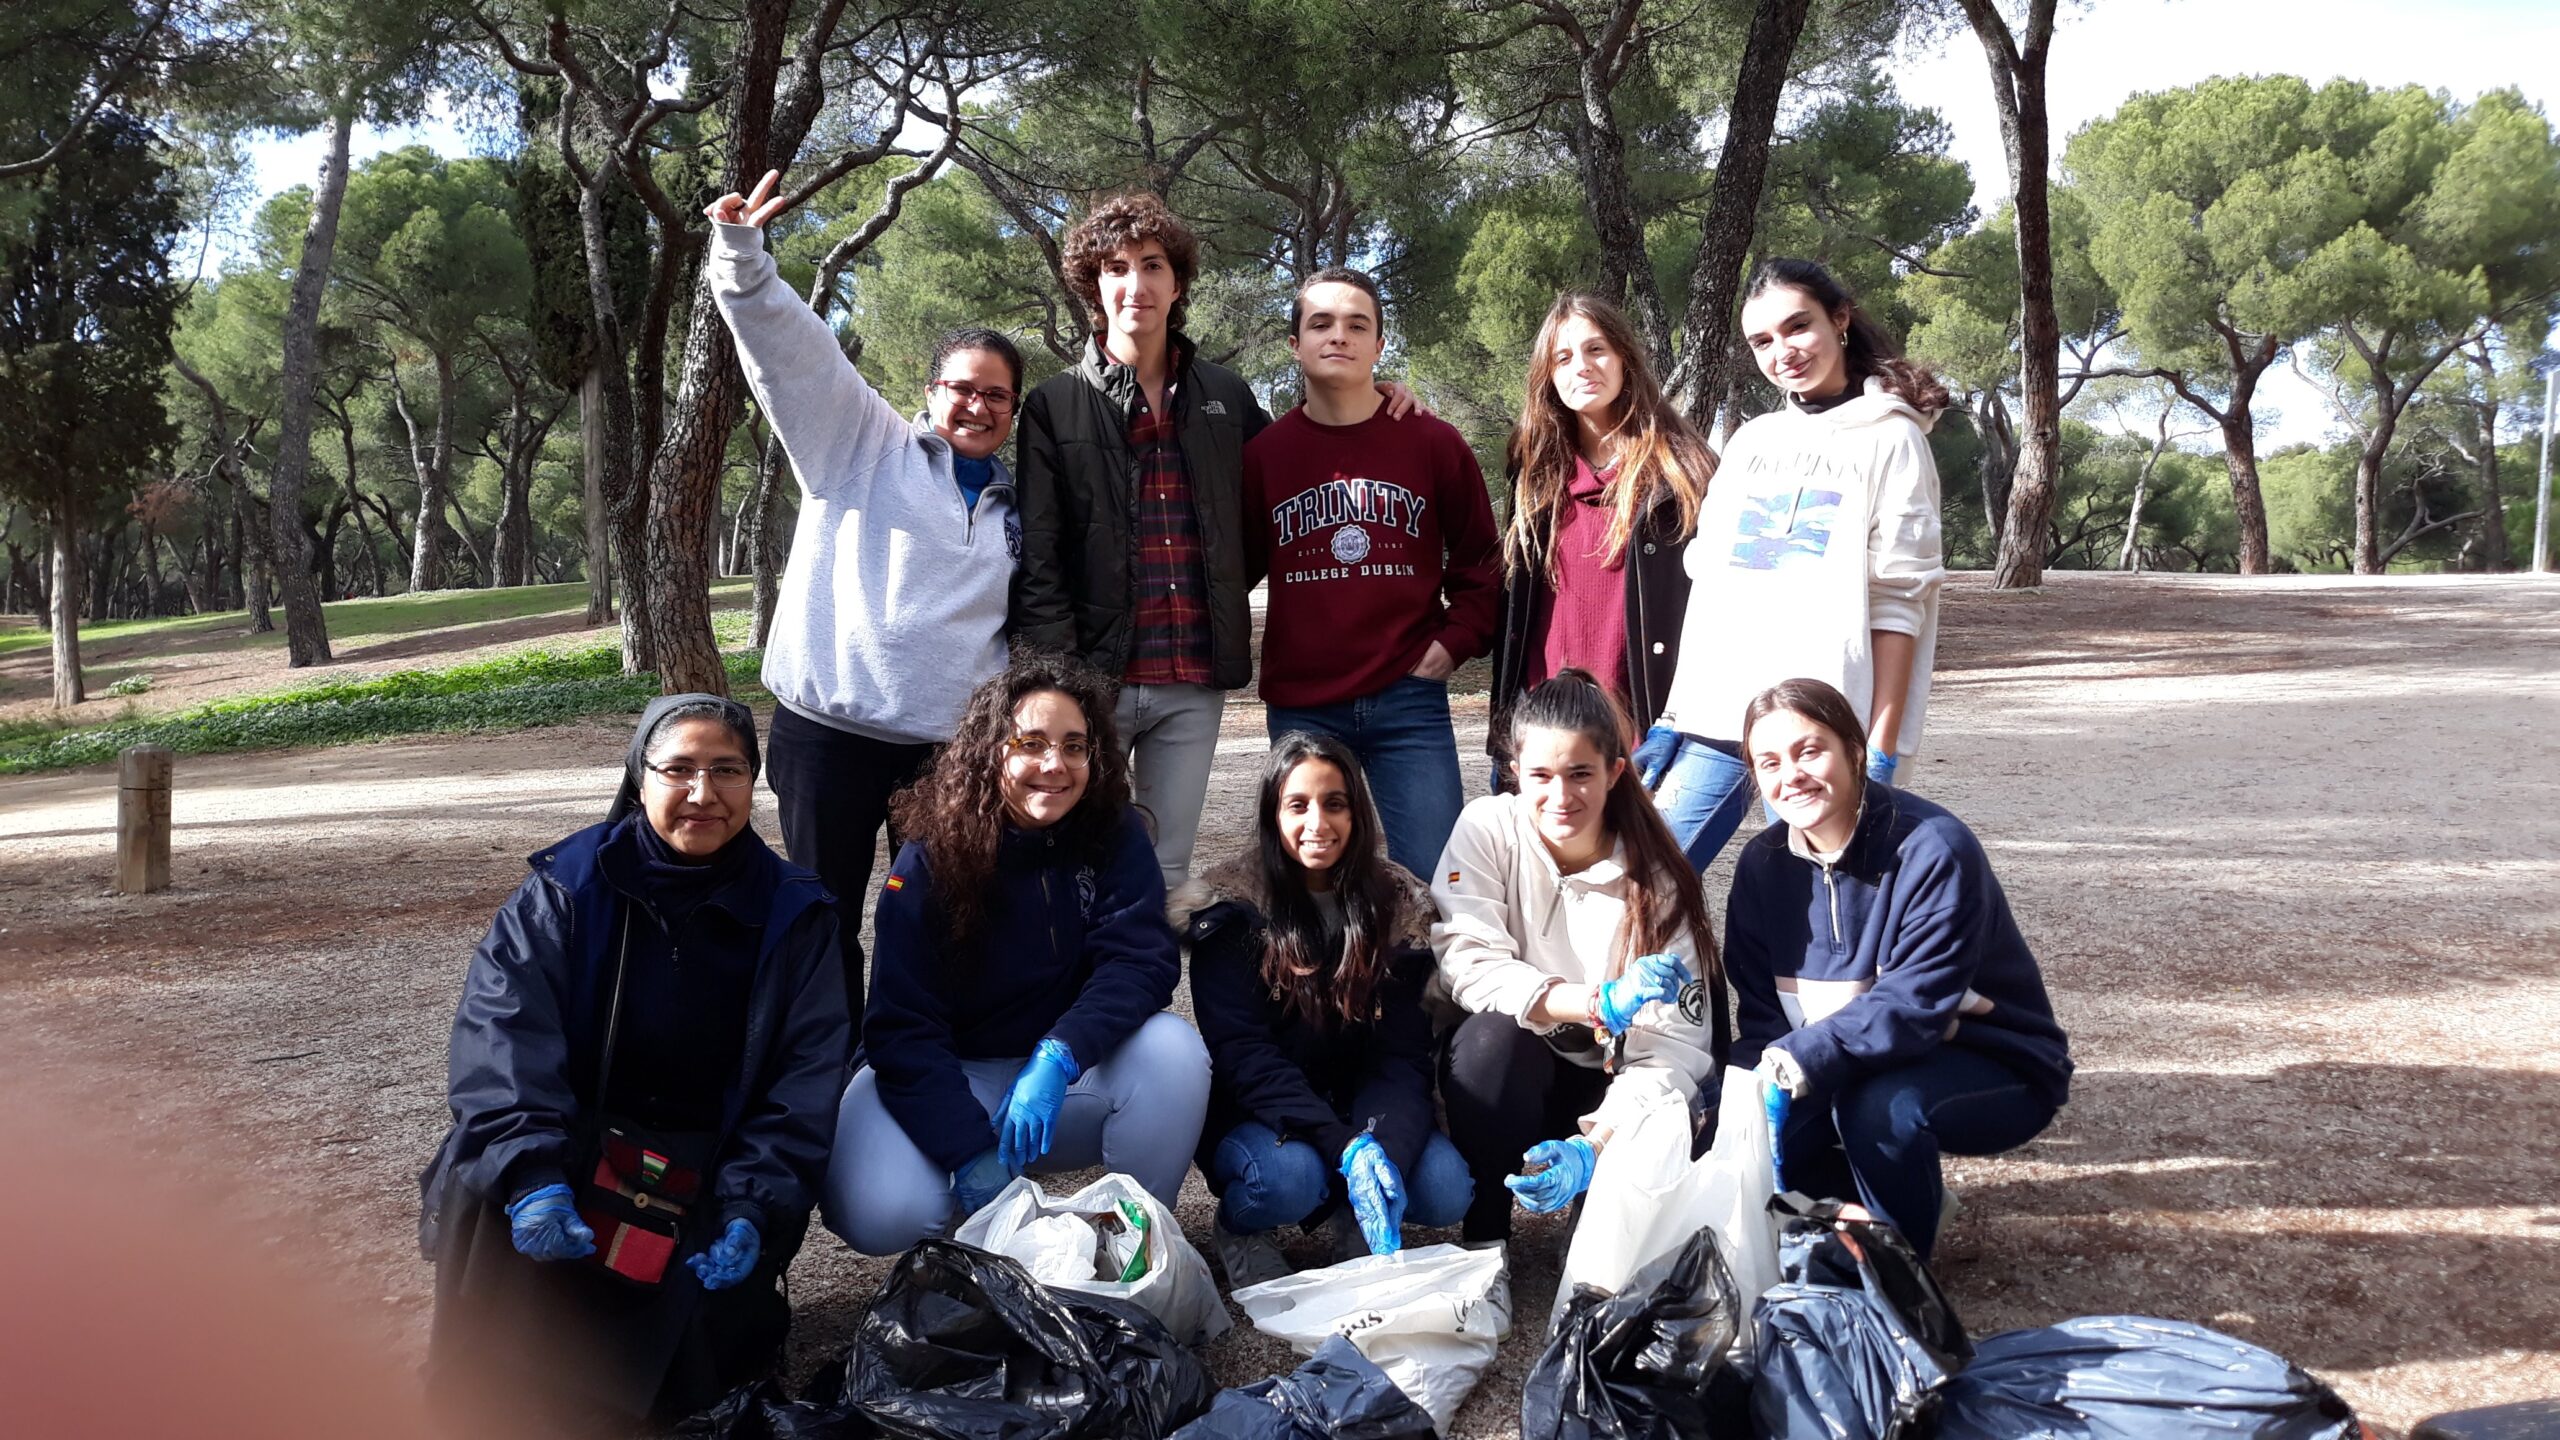 Aula de Derechos Humanos sobre el Cambio climático compartido entre el CMU Mara y el CMU Alcalá - Madrid - COP25 - El cambio está en manos de todos - Colegio Mayor en Madrid